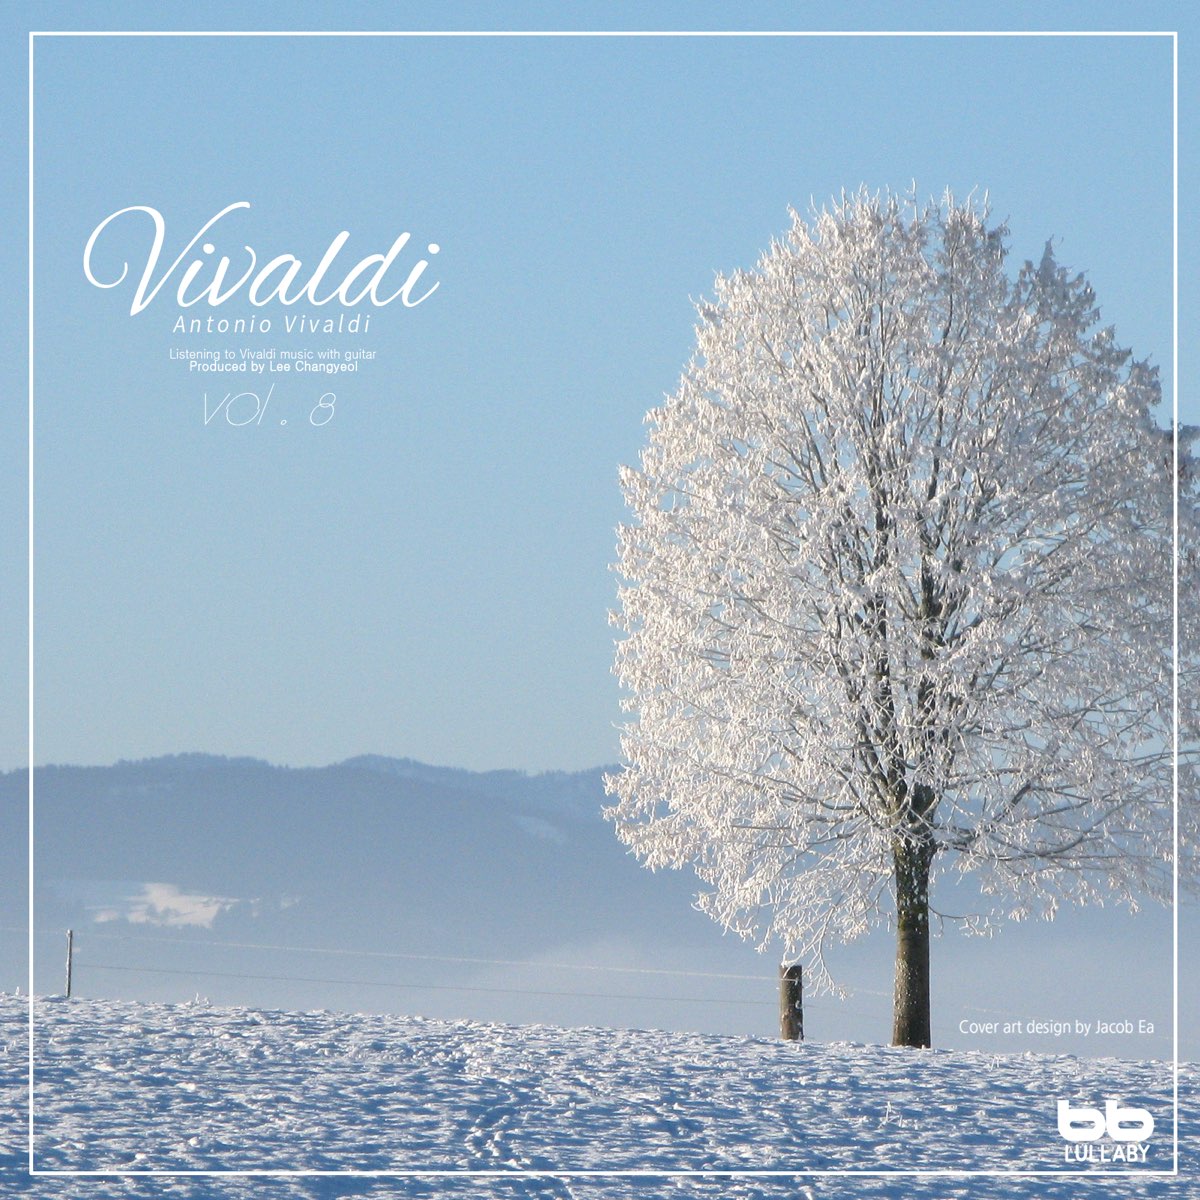 Времена года в обработке слушать. Антонио Вивальди зима. Зима в произведении Антонио Вивальди. Вивальди времена года зима. Картина Вивальди зима.